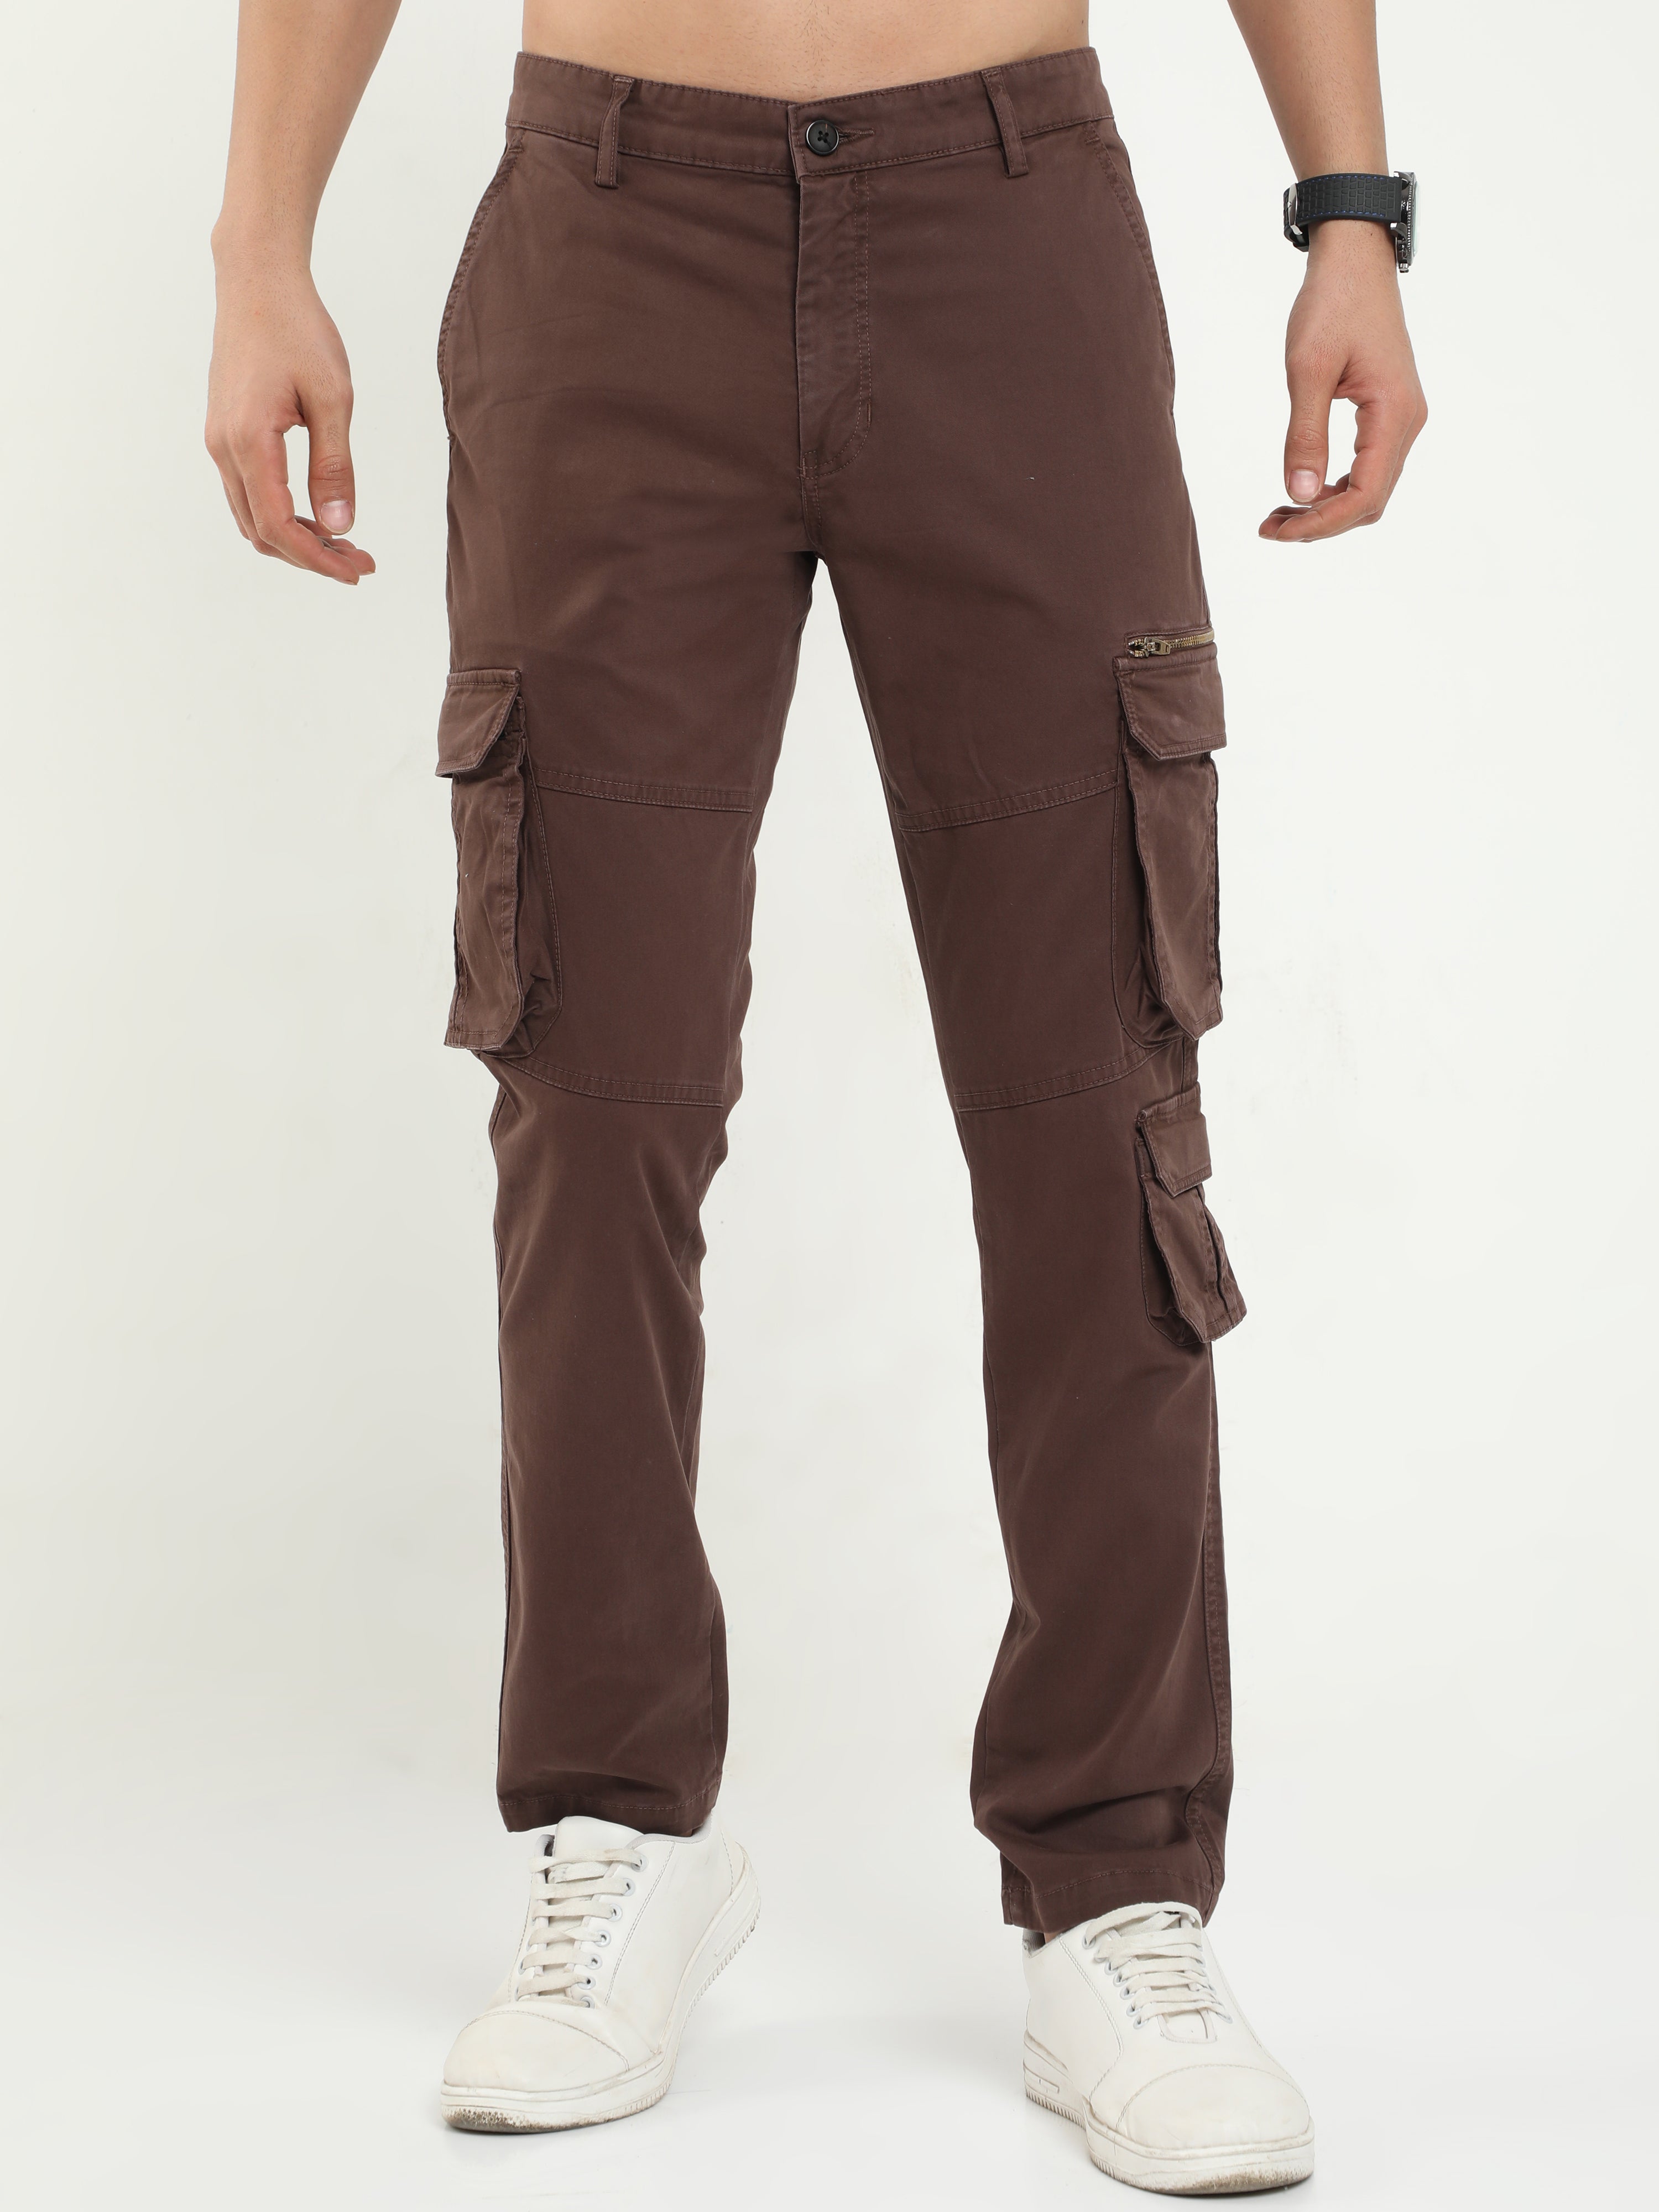 Buy Men Casual Cargo Jogger, Men's Regular Cargo Pants, Men 's Solid Full  Length Cargo Pants. Beige at Amazon.in